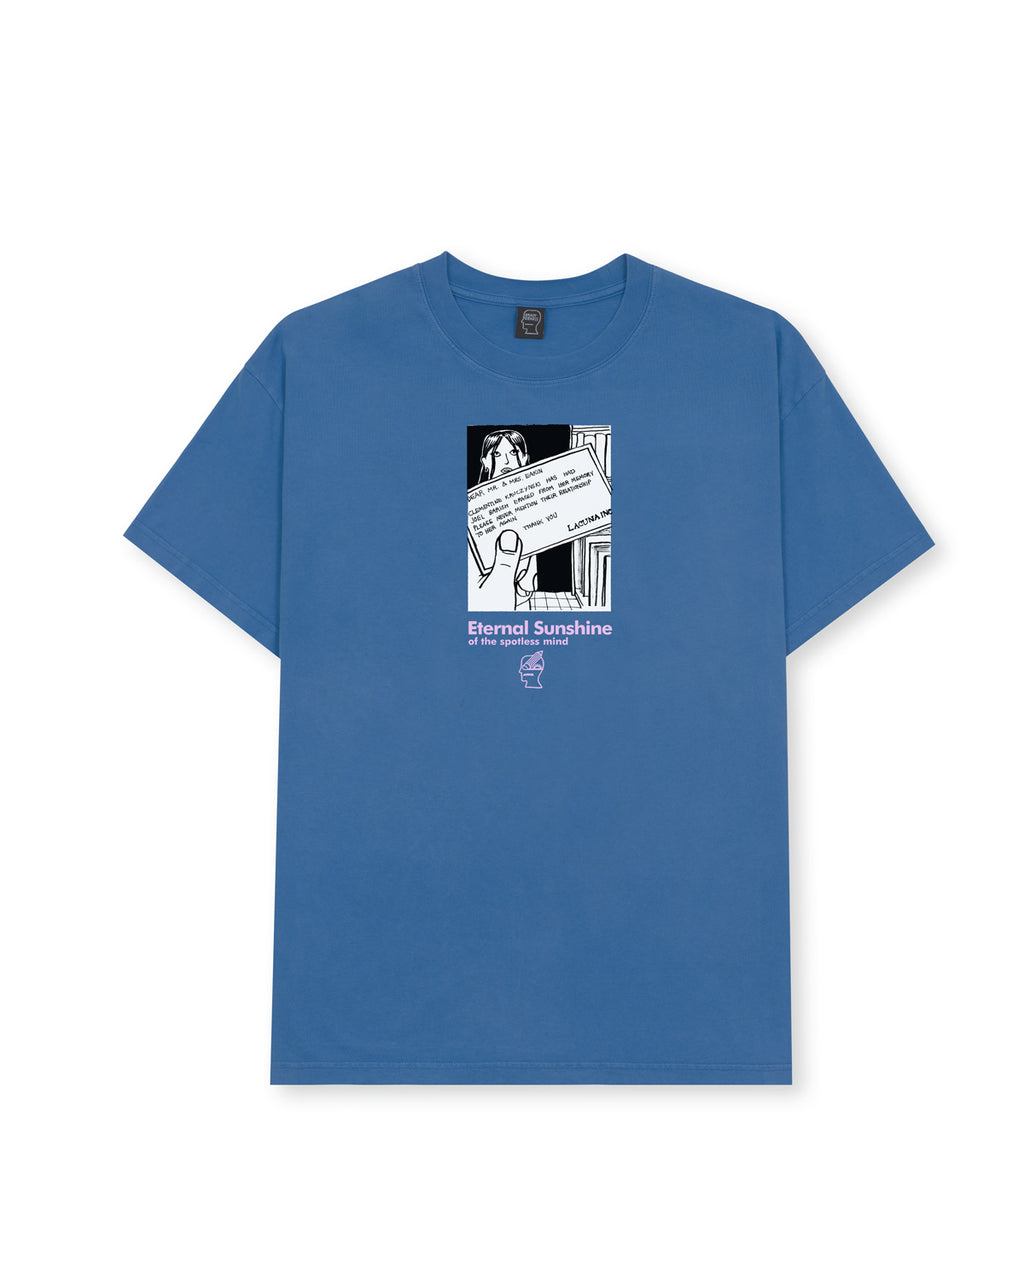 Brain Dead x Eternal Sunshine Of The Spotless Mind T-shirt - Denim